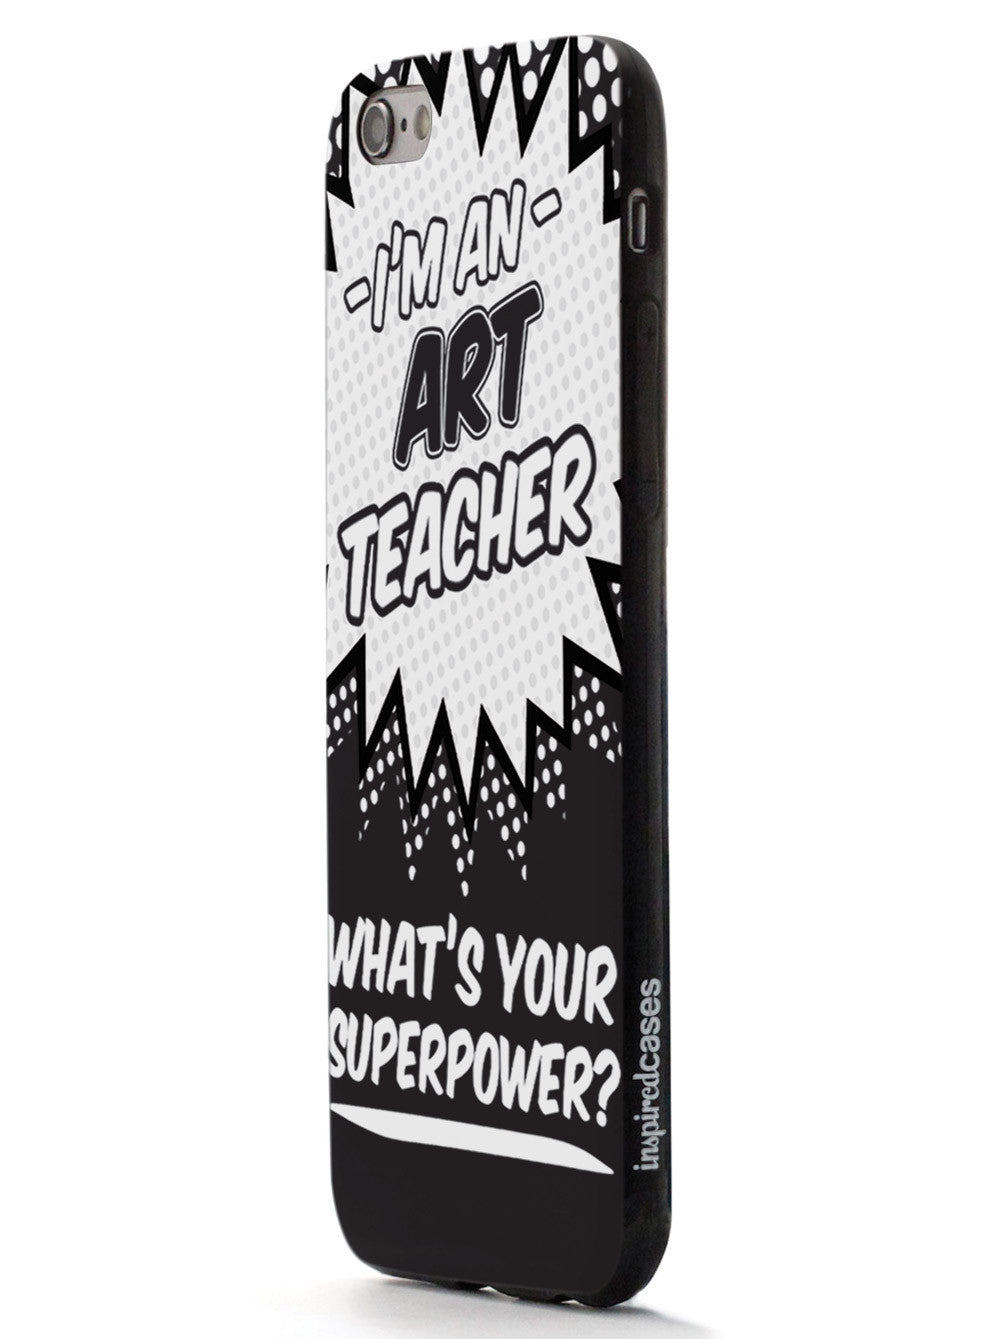 Art Teacher - What's Your Superpower? Case